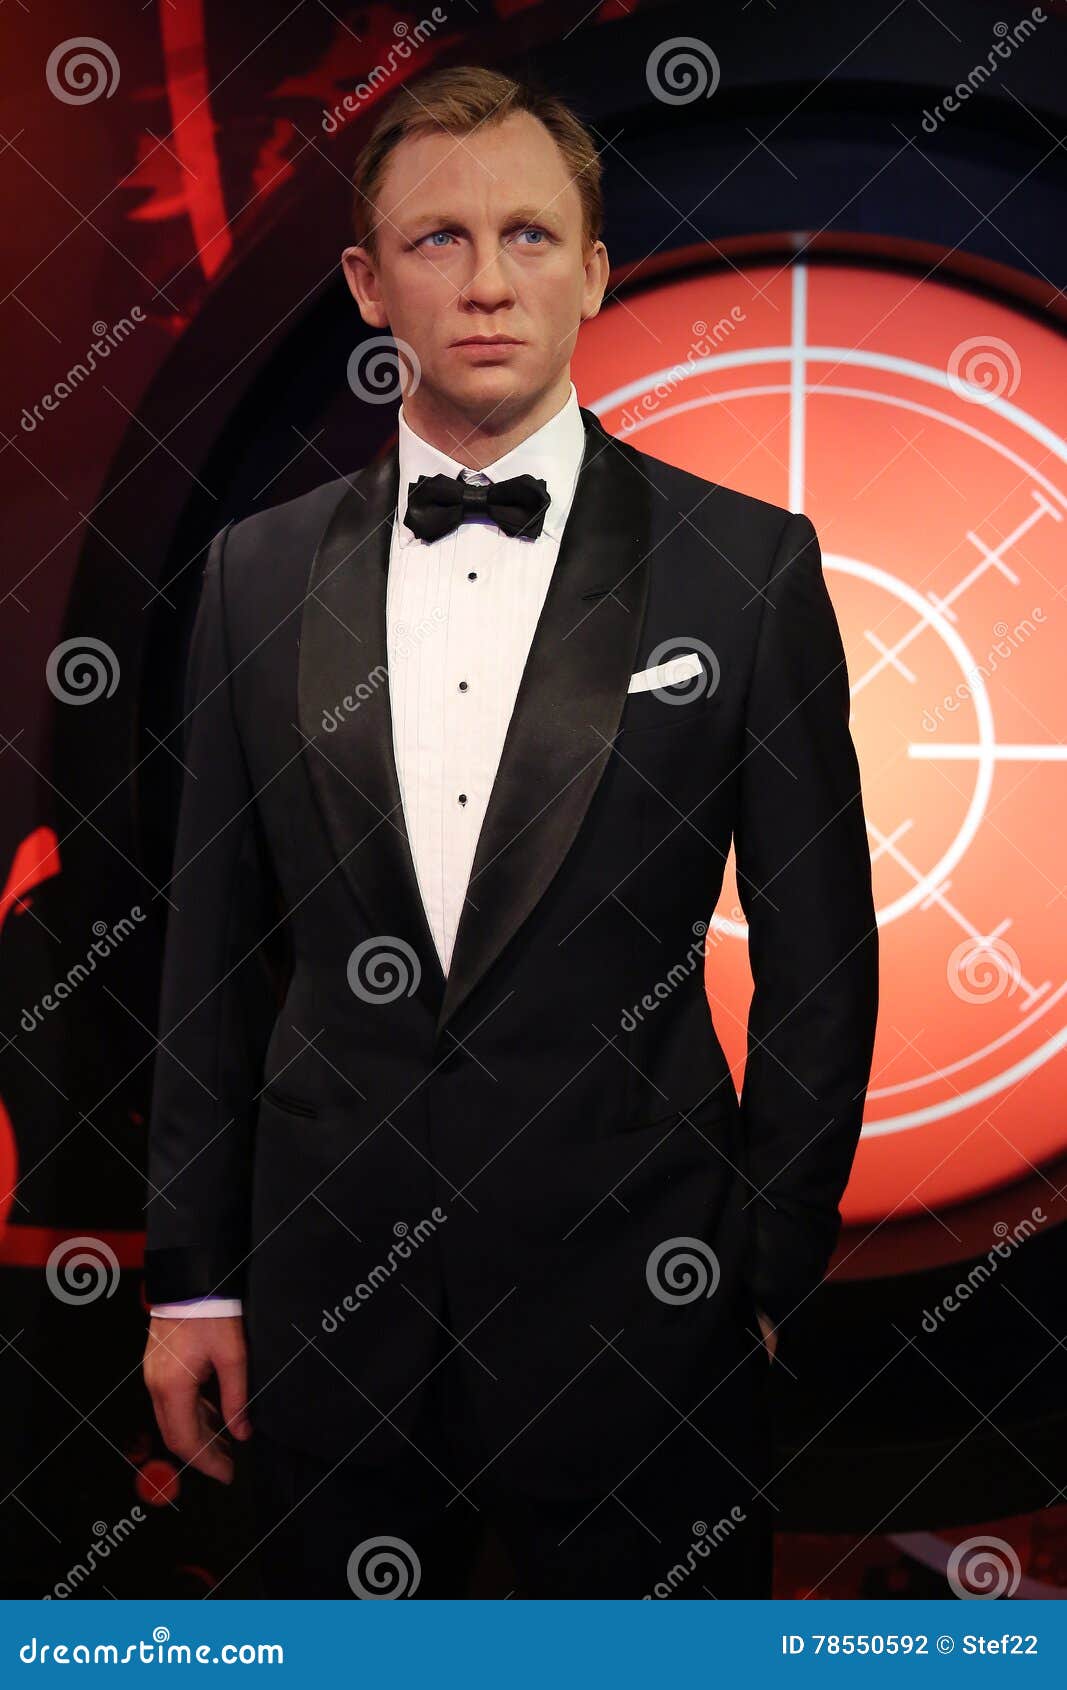 Daniel Craig Como La Estatua De La Cera De James Bond Del Agente 007 Fotografia Editorial Imagen De Celebridad Fama